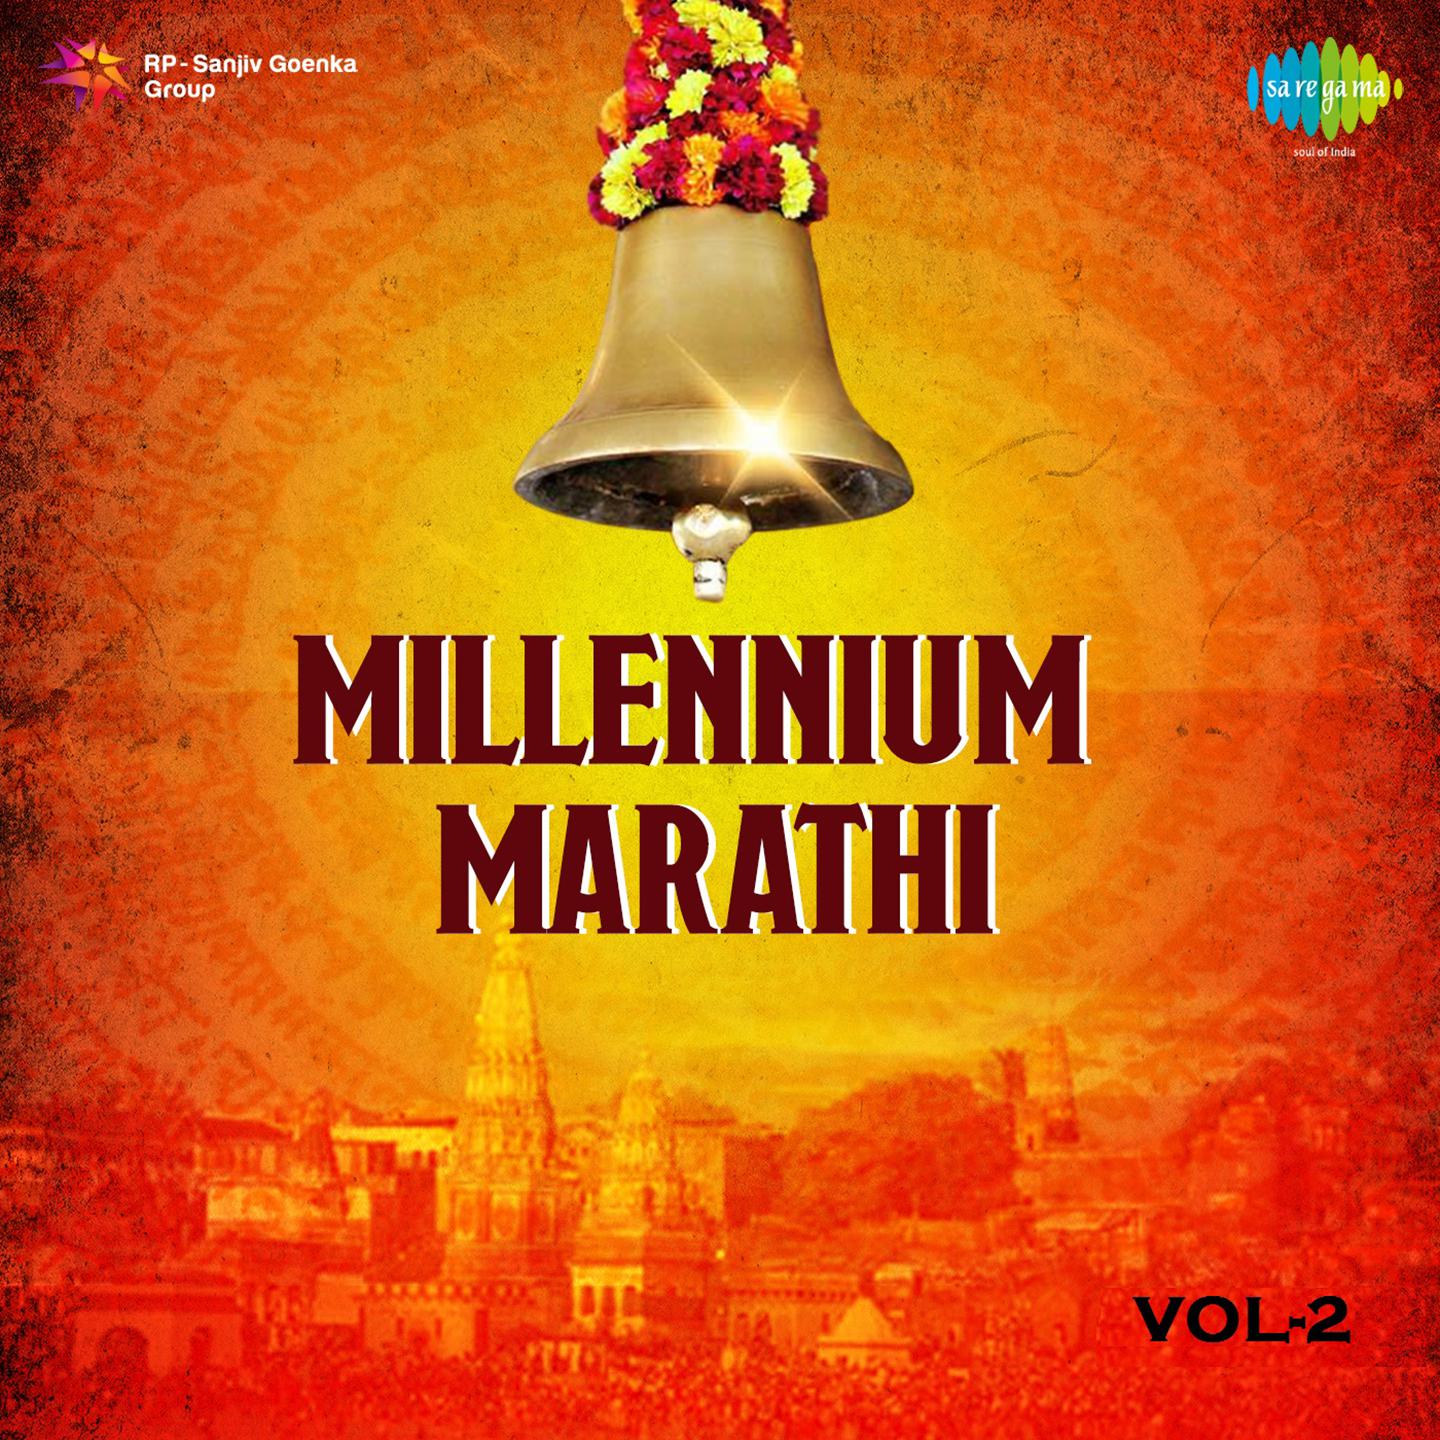 Millennium Marathi Vol 2